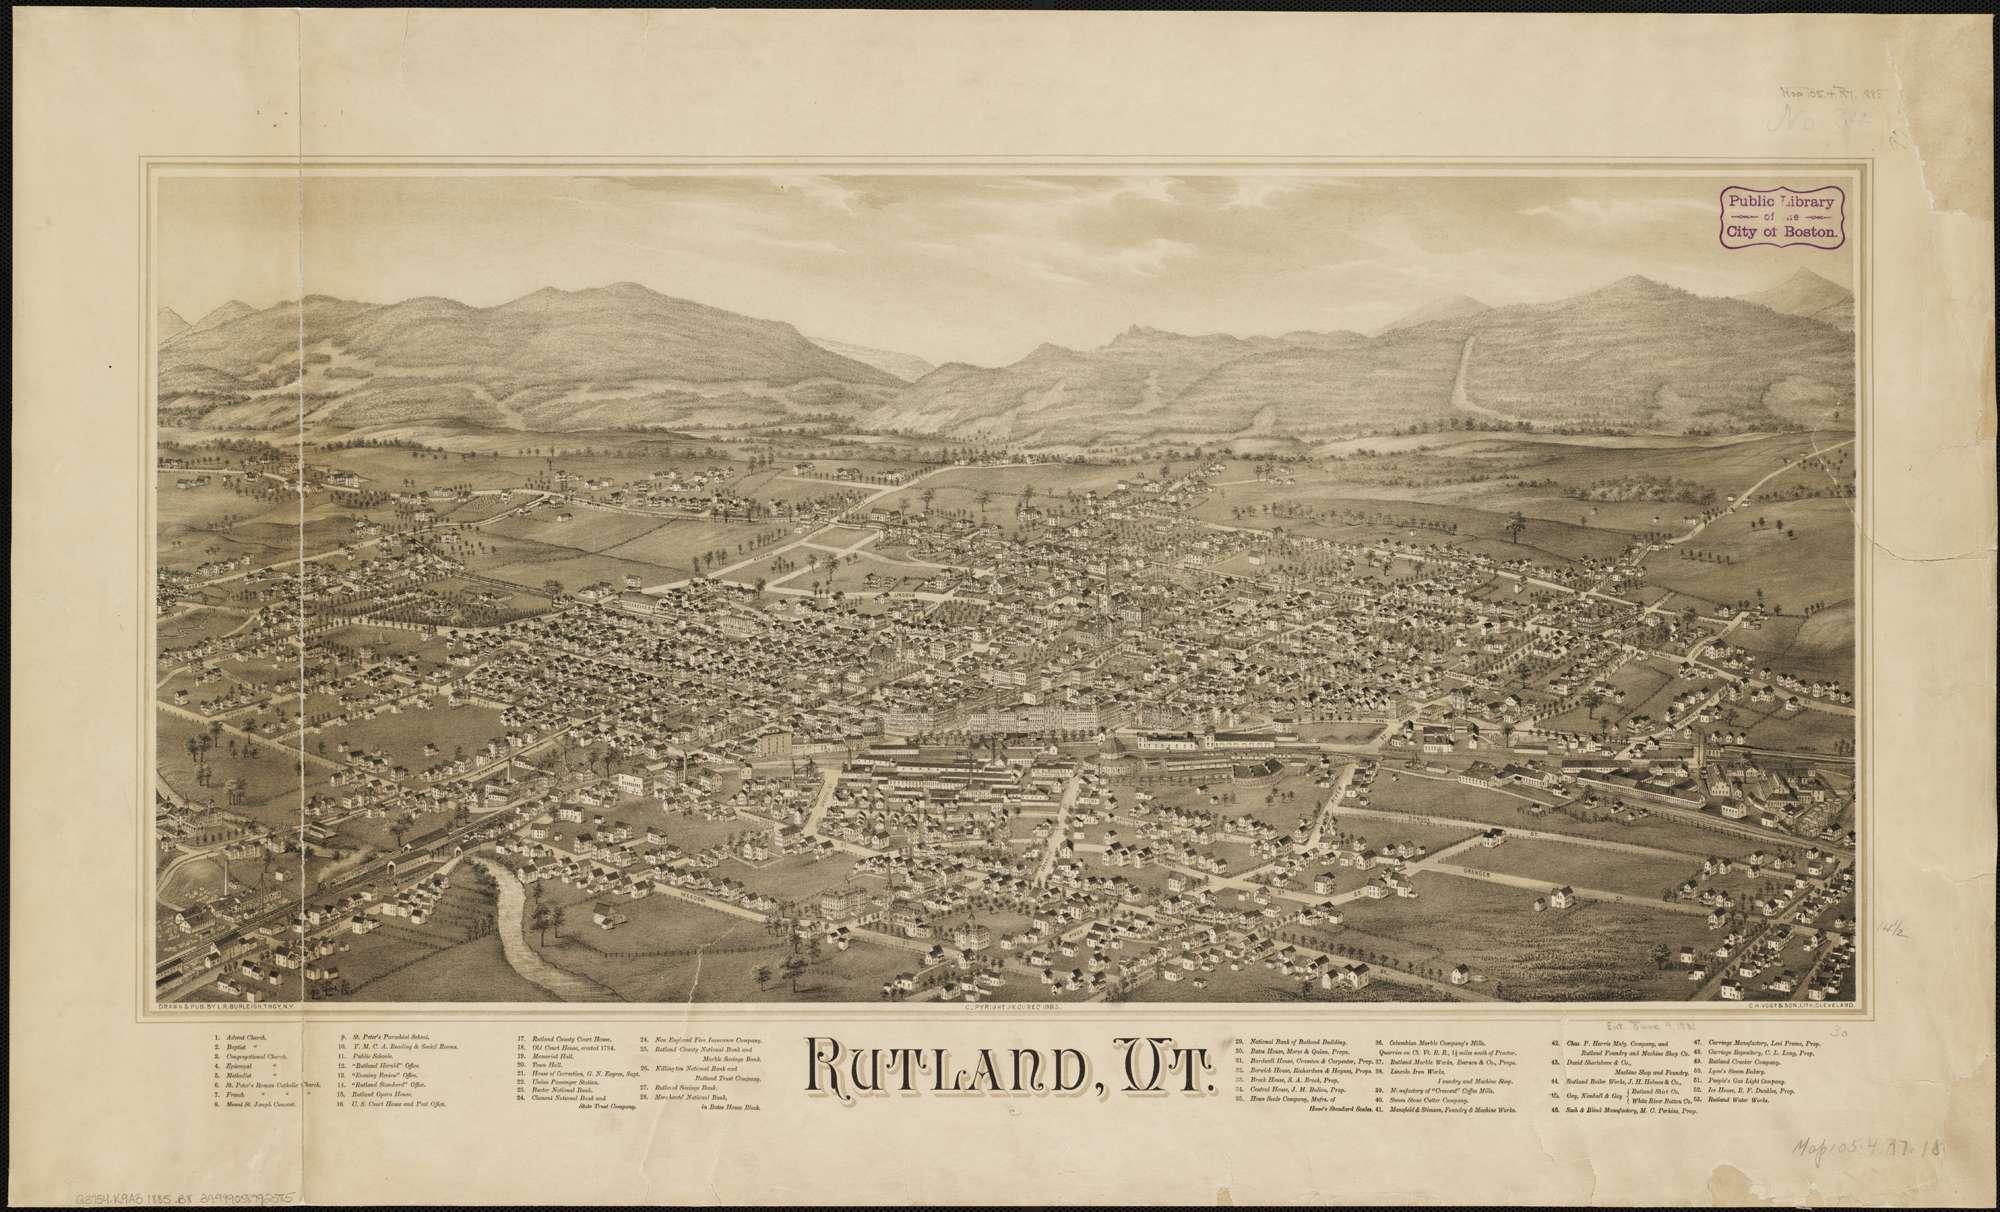 Rutland as it appeared in O.B. Clark's day.